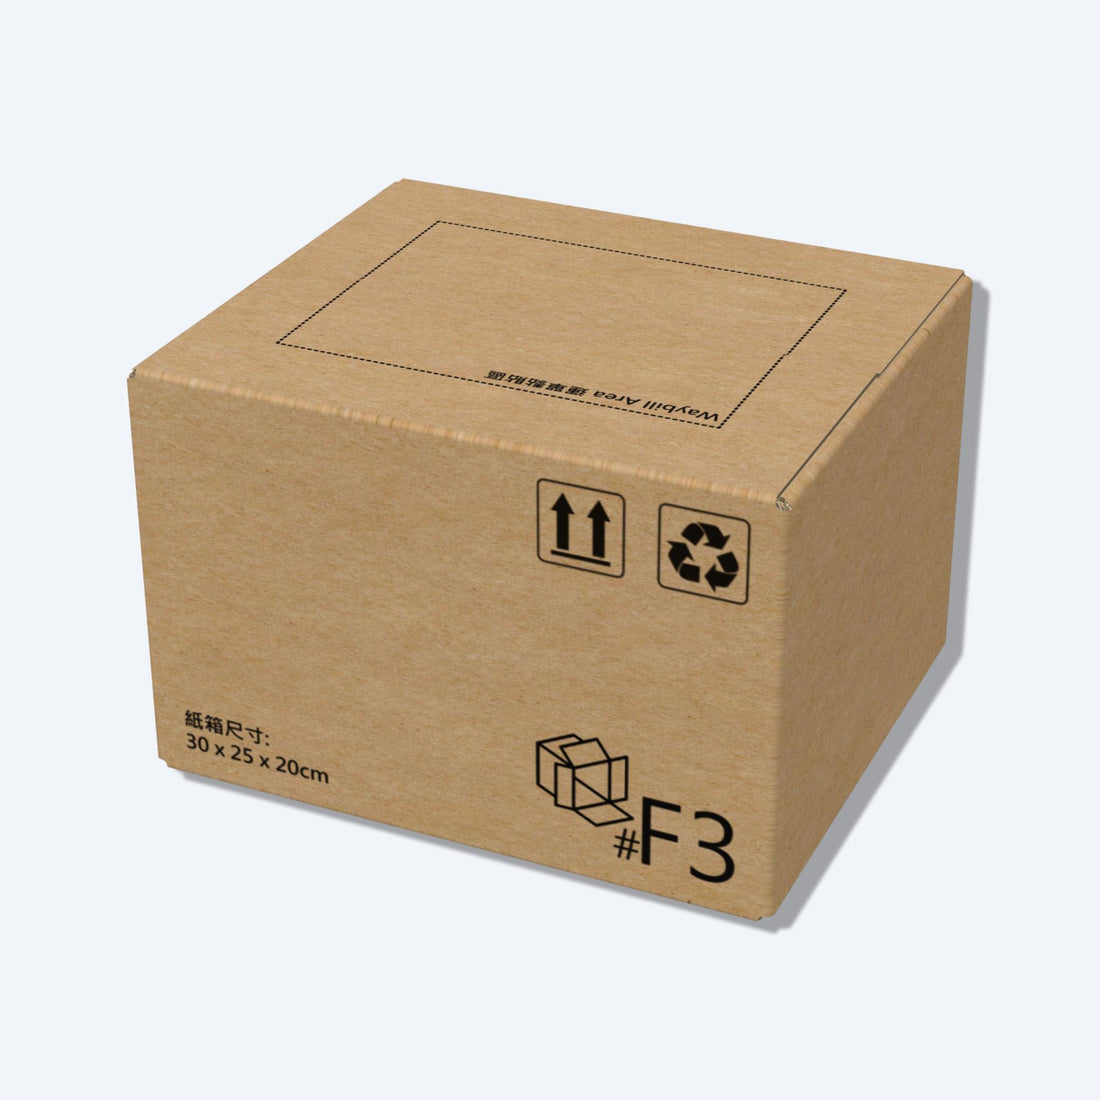 順豐速運F3尺寸紙箱側視圖，展示尺寸和質感，是適合中型物品運輸的理想選擇。